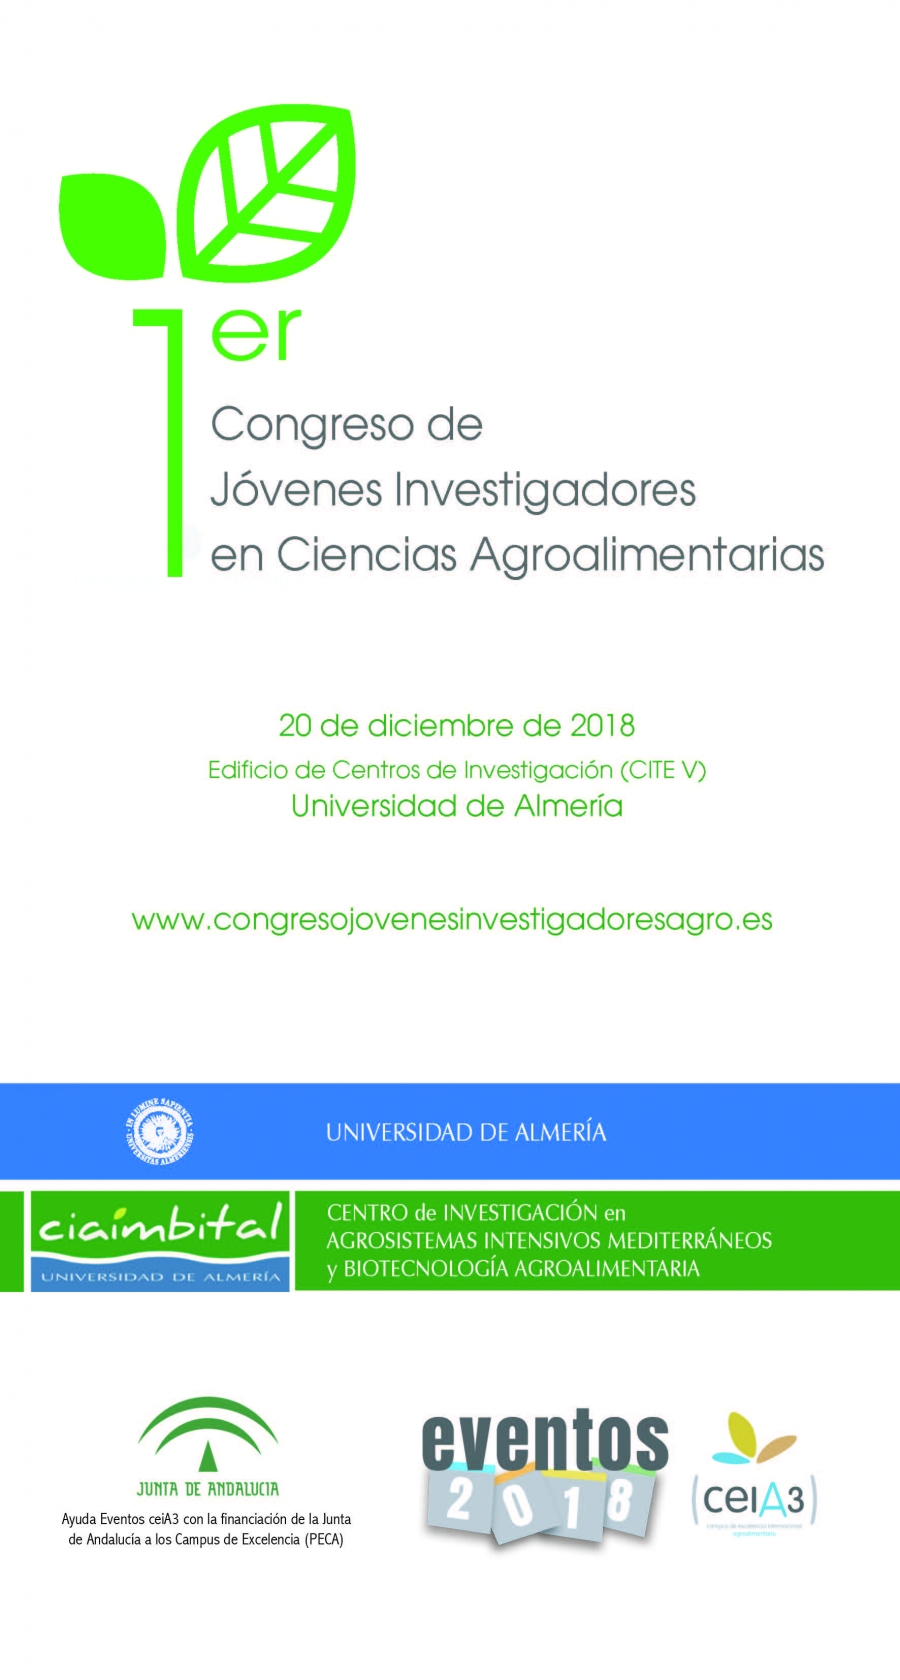 El ceiA3 apoya la celebración del Primer Congreso de Jóvenes Investigadores en Ciencias Agroalimentarias en UAL